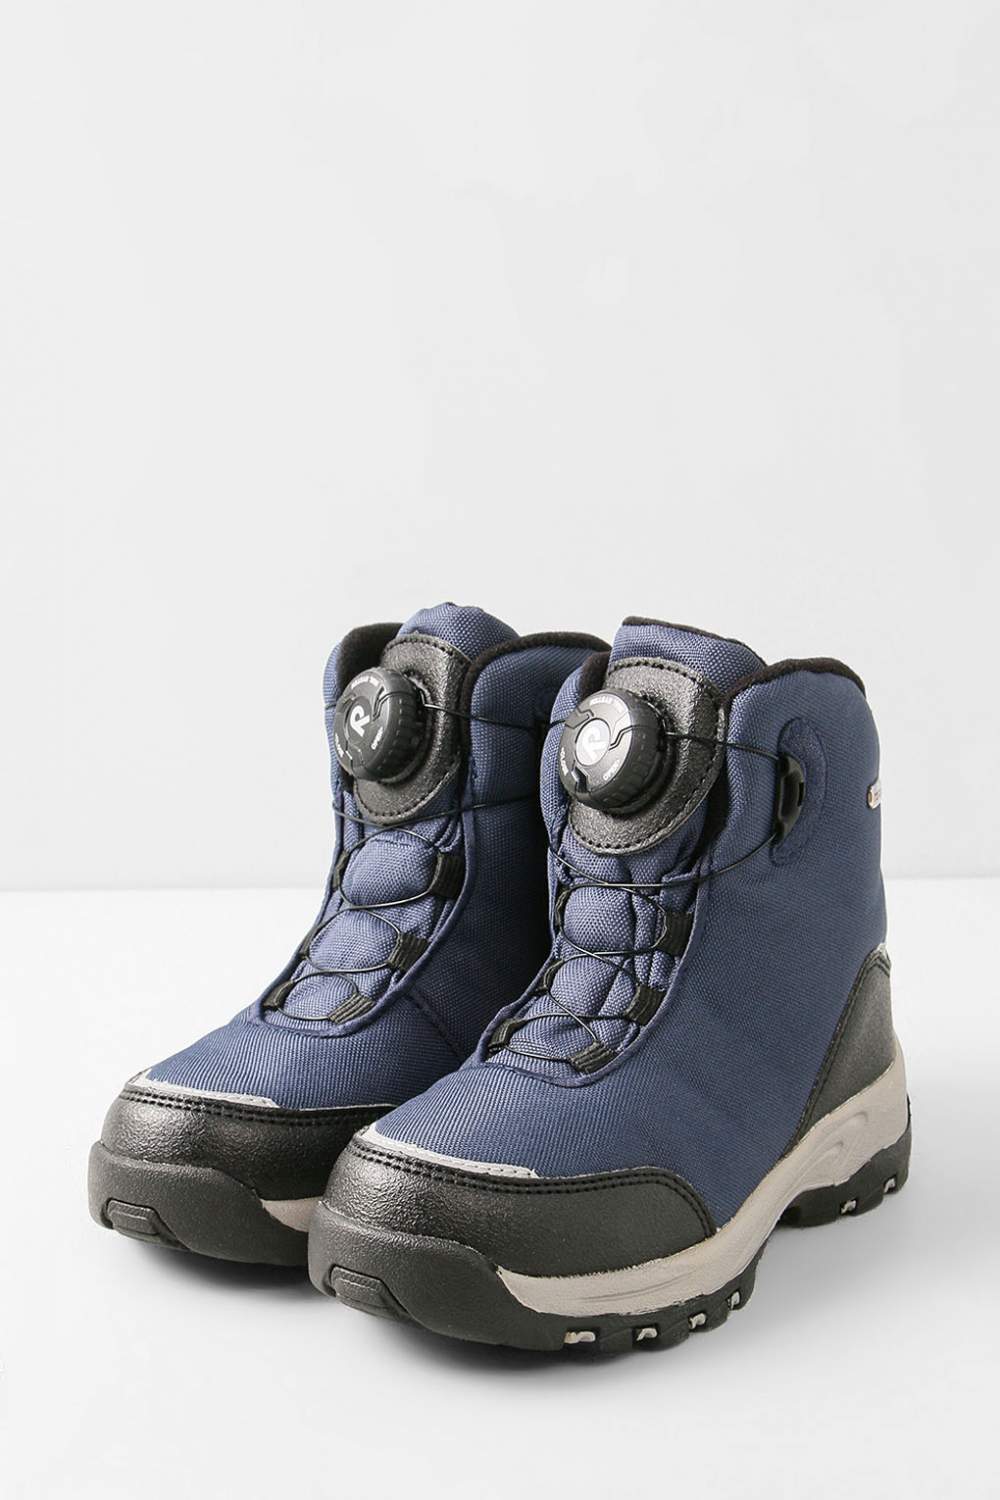 Отзывы о ботинки Reima 569434 тёмно-синий, 34 - отзывы покупателей наМегамаркет